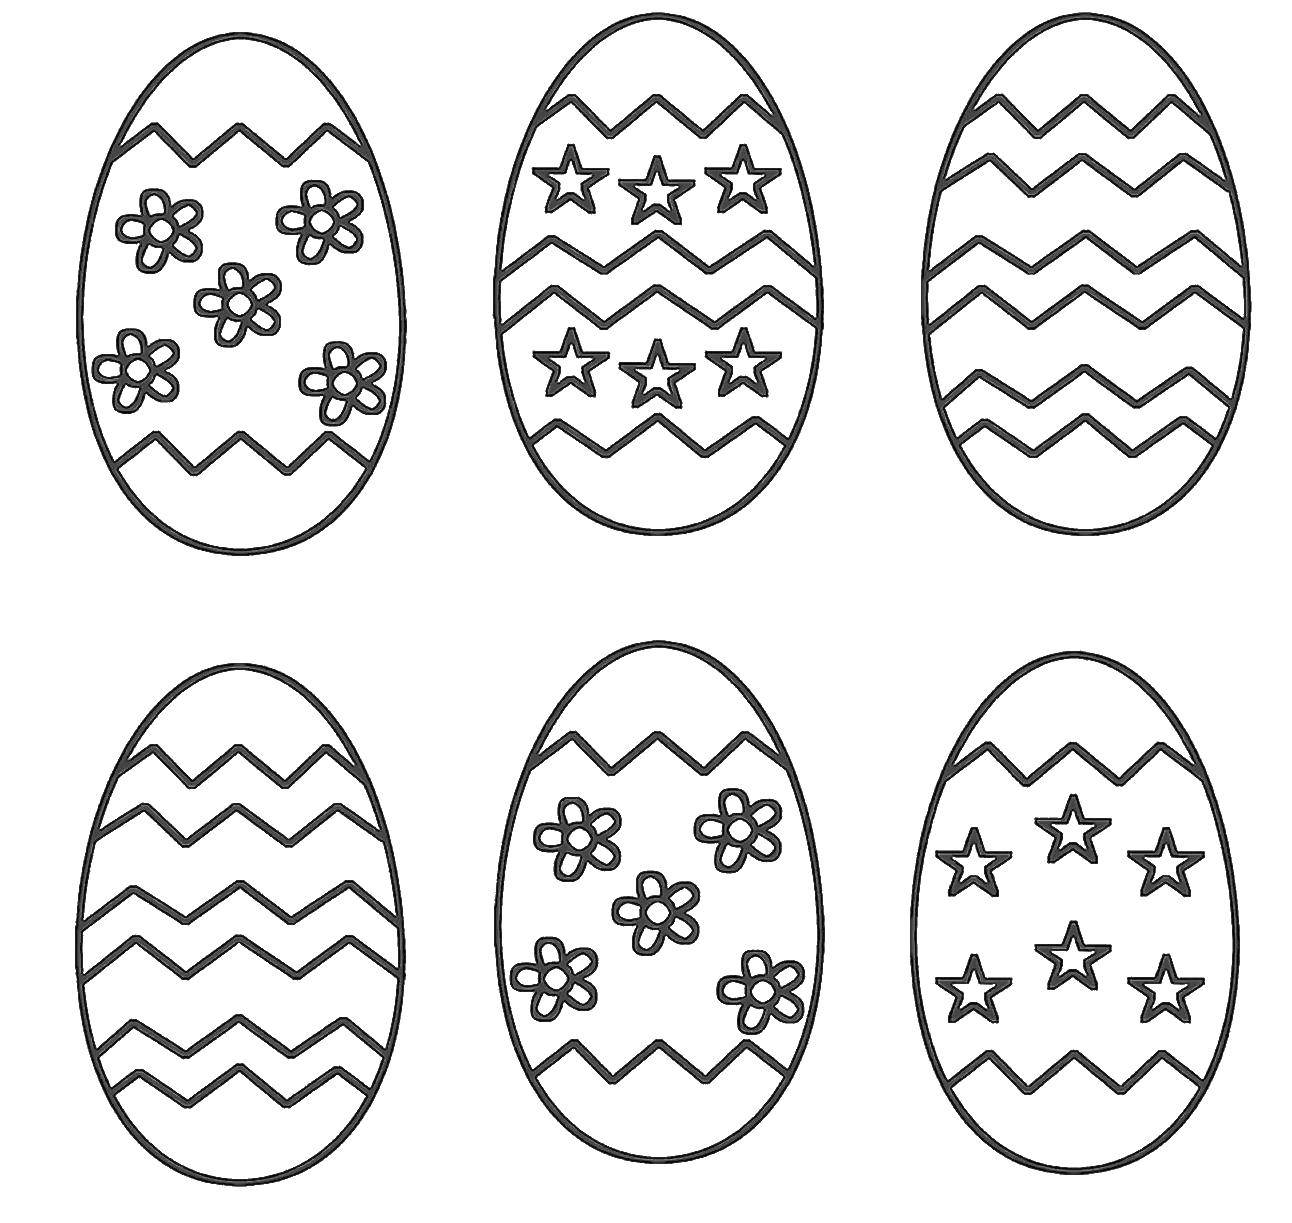 Название: Раскраска Различные узоры на яйцах. Категория: Узоры для раскрашивания яиц. Теги: Пасха, яйца, узоры.